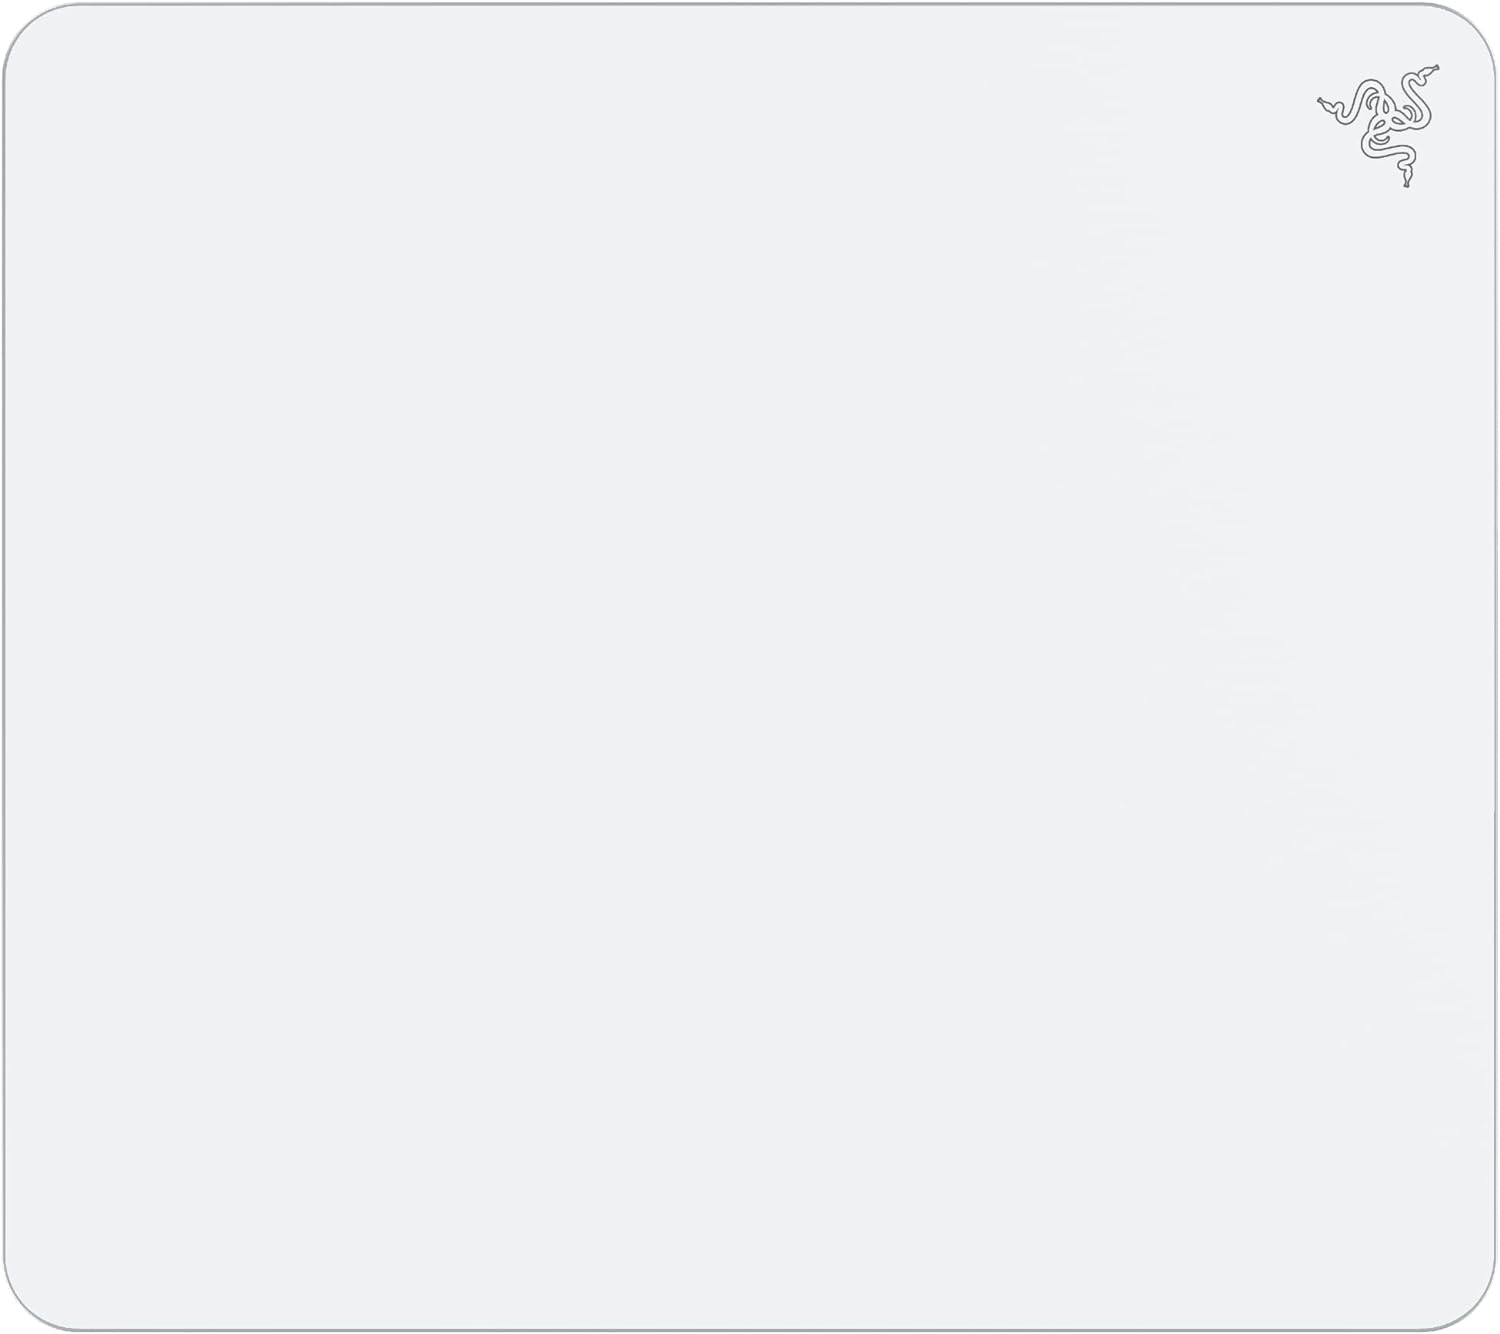 【新品】1週間以内発送 Razer レイザー Atlas White Edition ガラス製ゲーミングマウスパッド 450mm 400mm アトラス 白 ゲーム